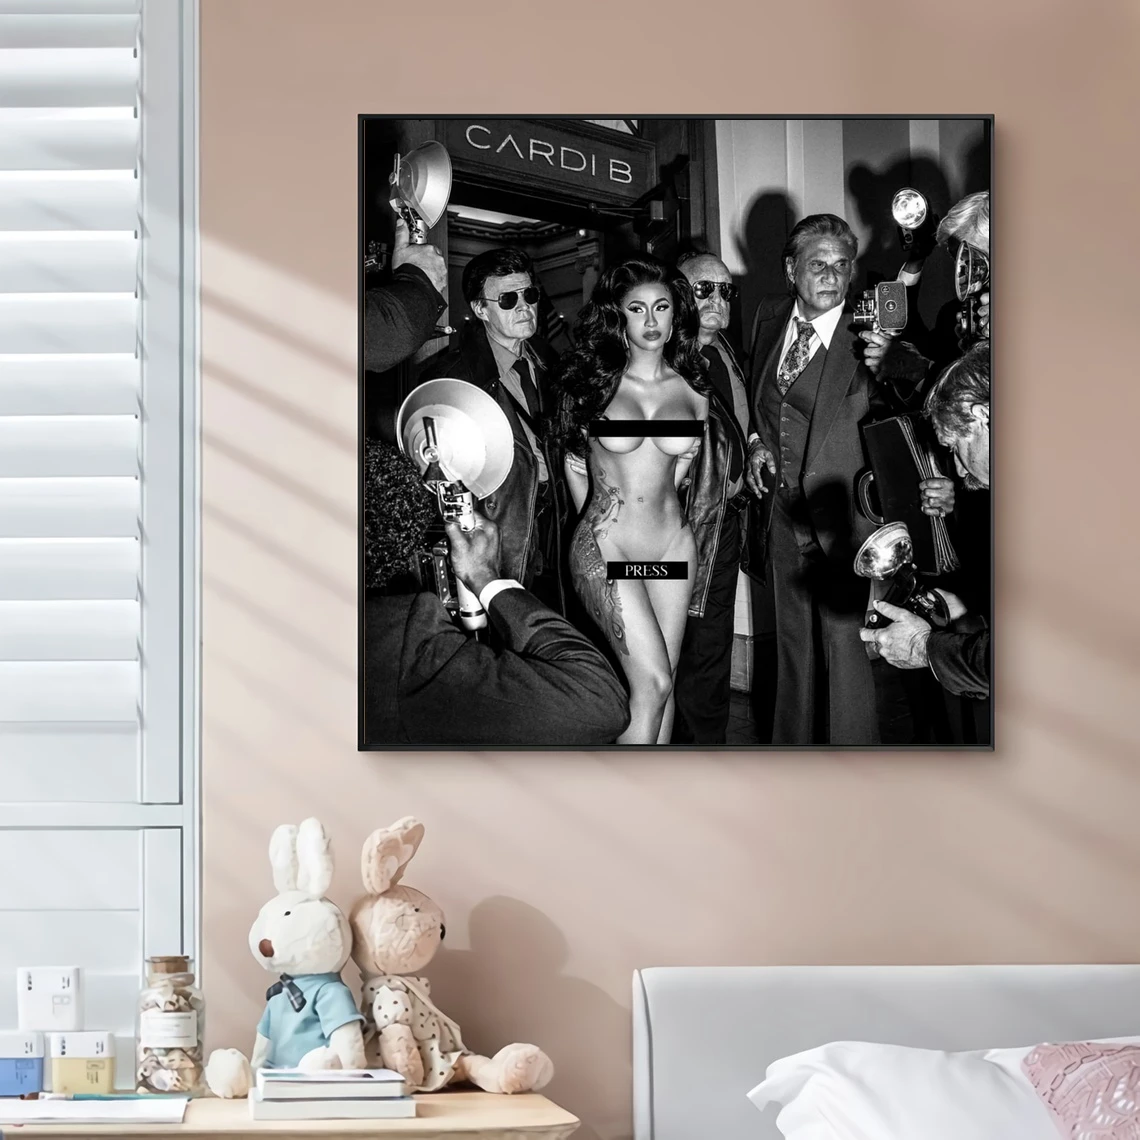 

Caedi B Обложка альбома с одним нажатием музыки Холст плакат хип-хоп рэпер Поп-музыка знаменитости настенная живопись художественное украшени...